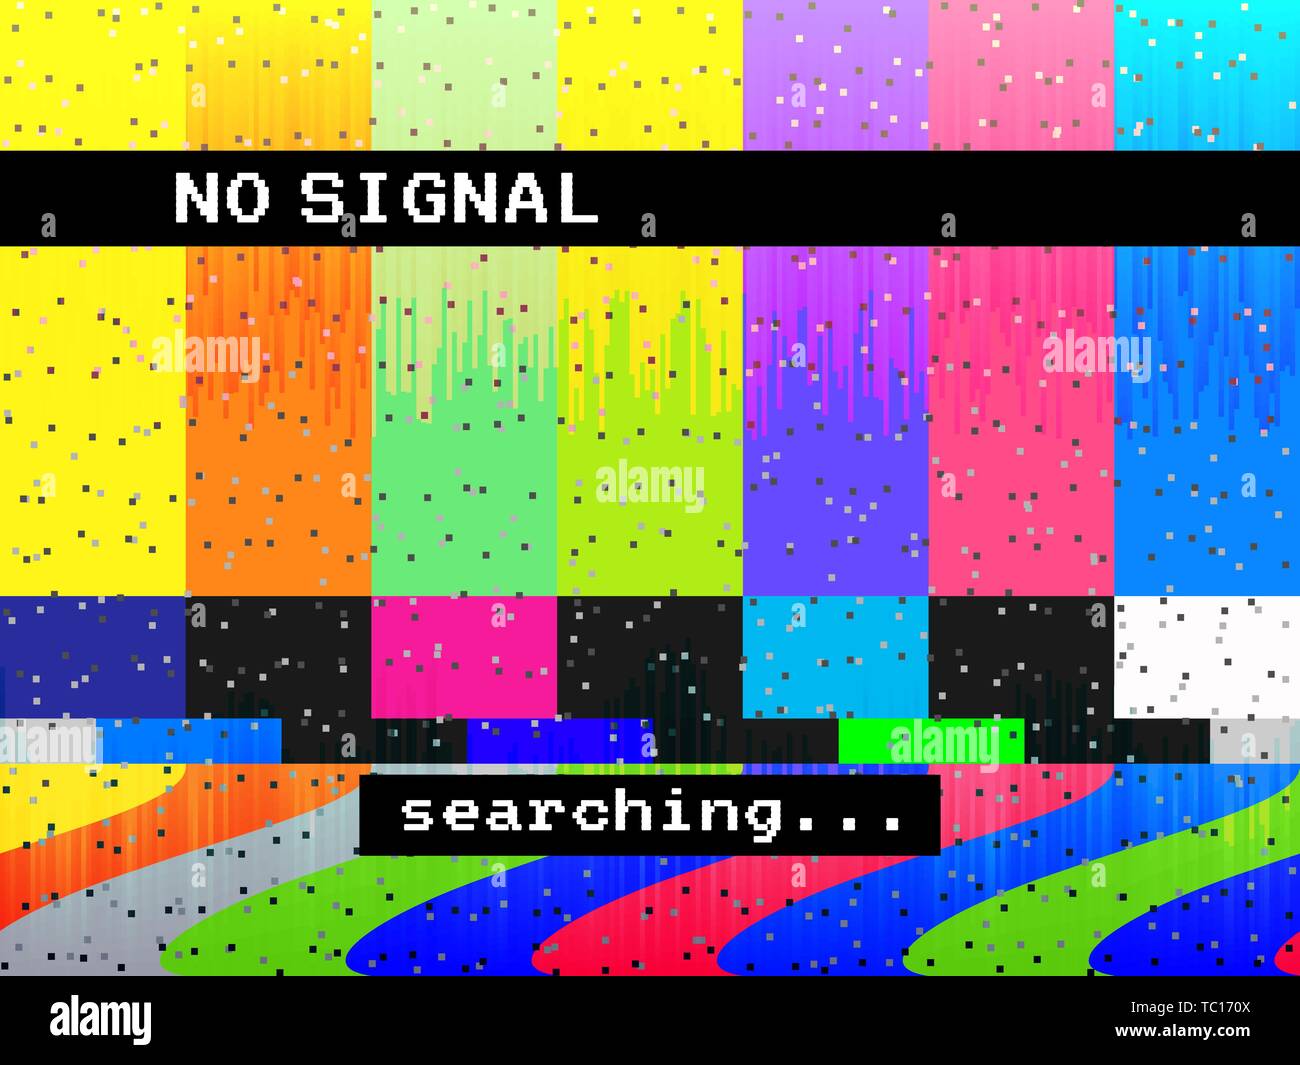 Kein Signal glitch TV. Verzerrte Farbe Linien. Digitale glitch Verzerrung. Bildschirm mit Farbbalken und Lärm. Vector Illustration Stock Vektor